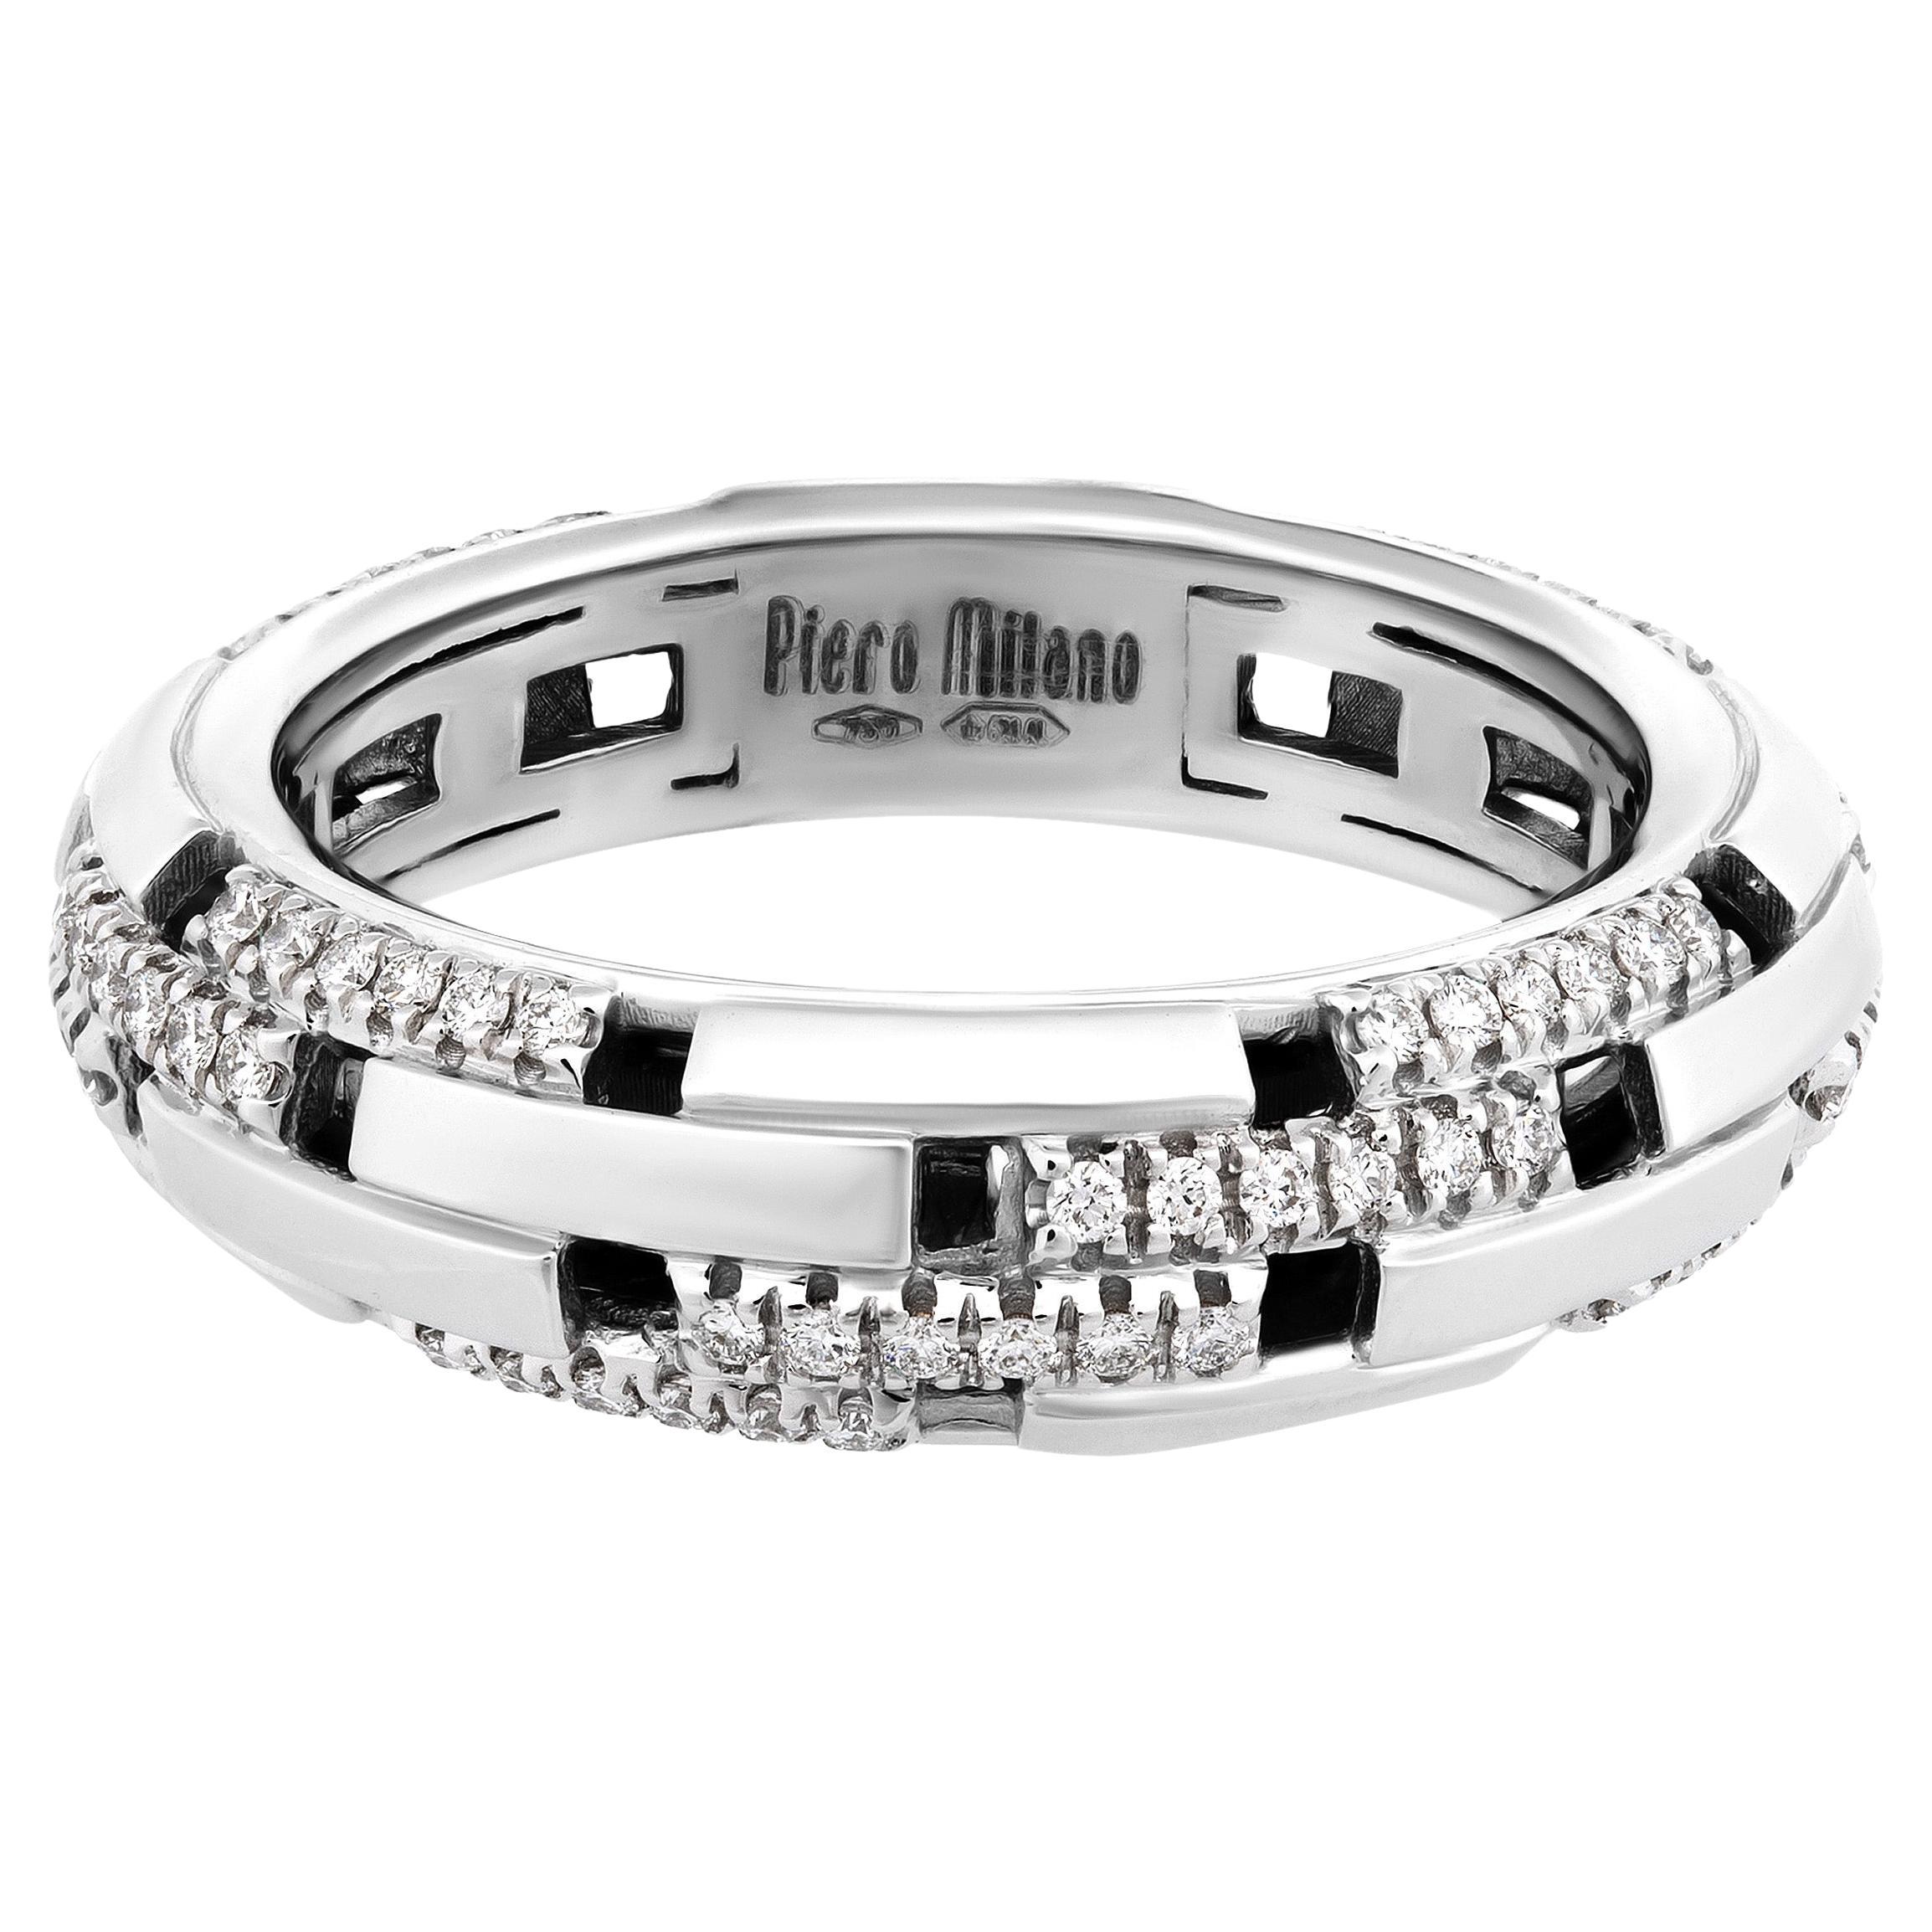 Piero Milano 18K White Gold Diamond Ring Sz 7 For Sale